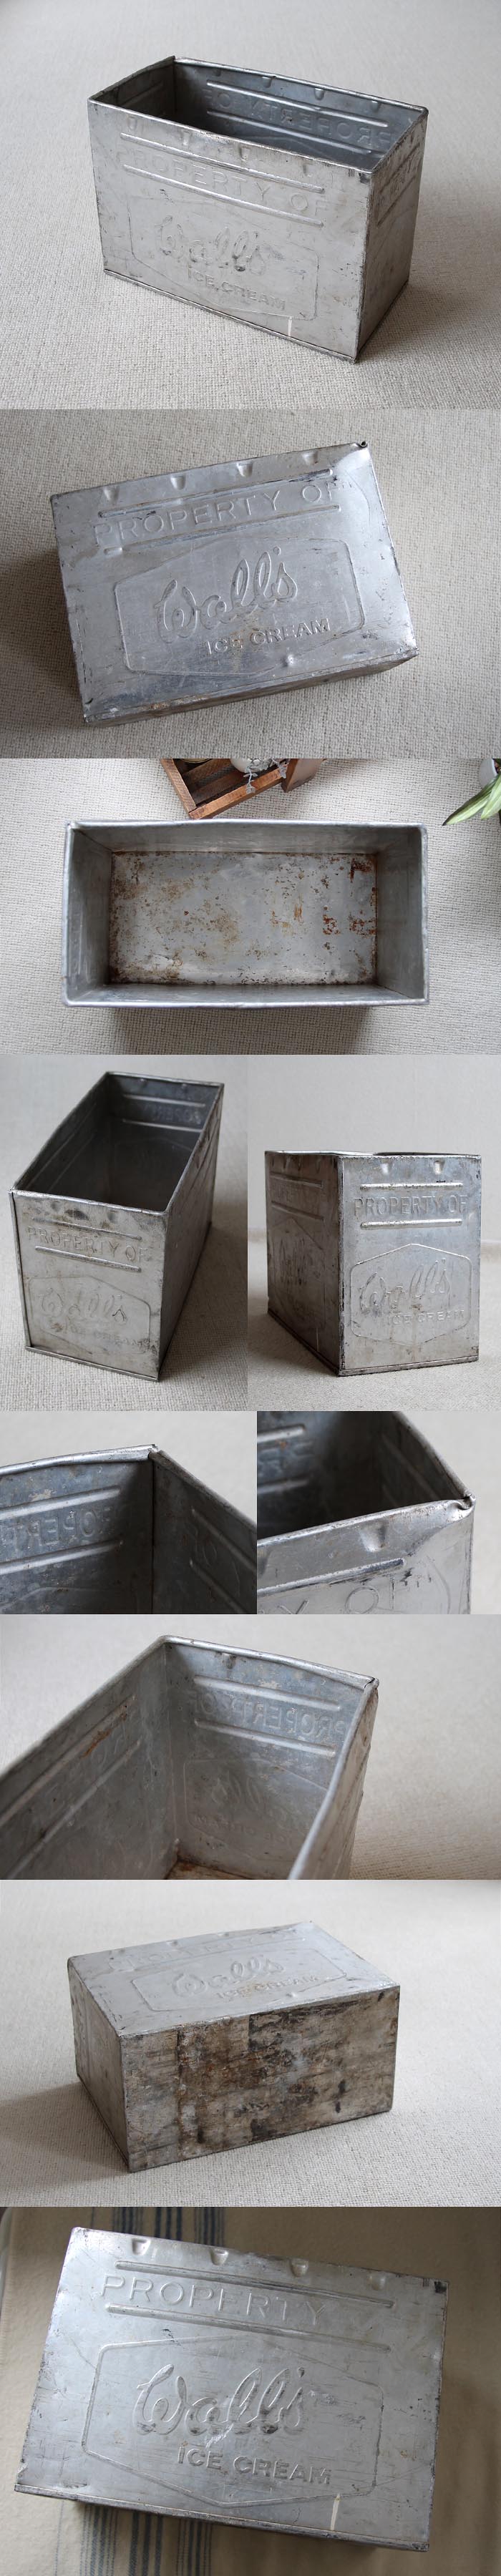 イギリス アンティーク Wall's アイスクリームコンテナ/アルミ製ボックス/収納箱/雑貨【エンボスロゴが可愛いBOX】M-859